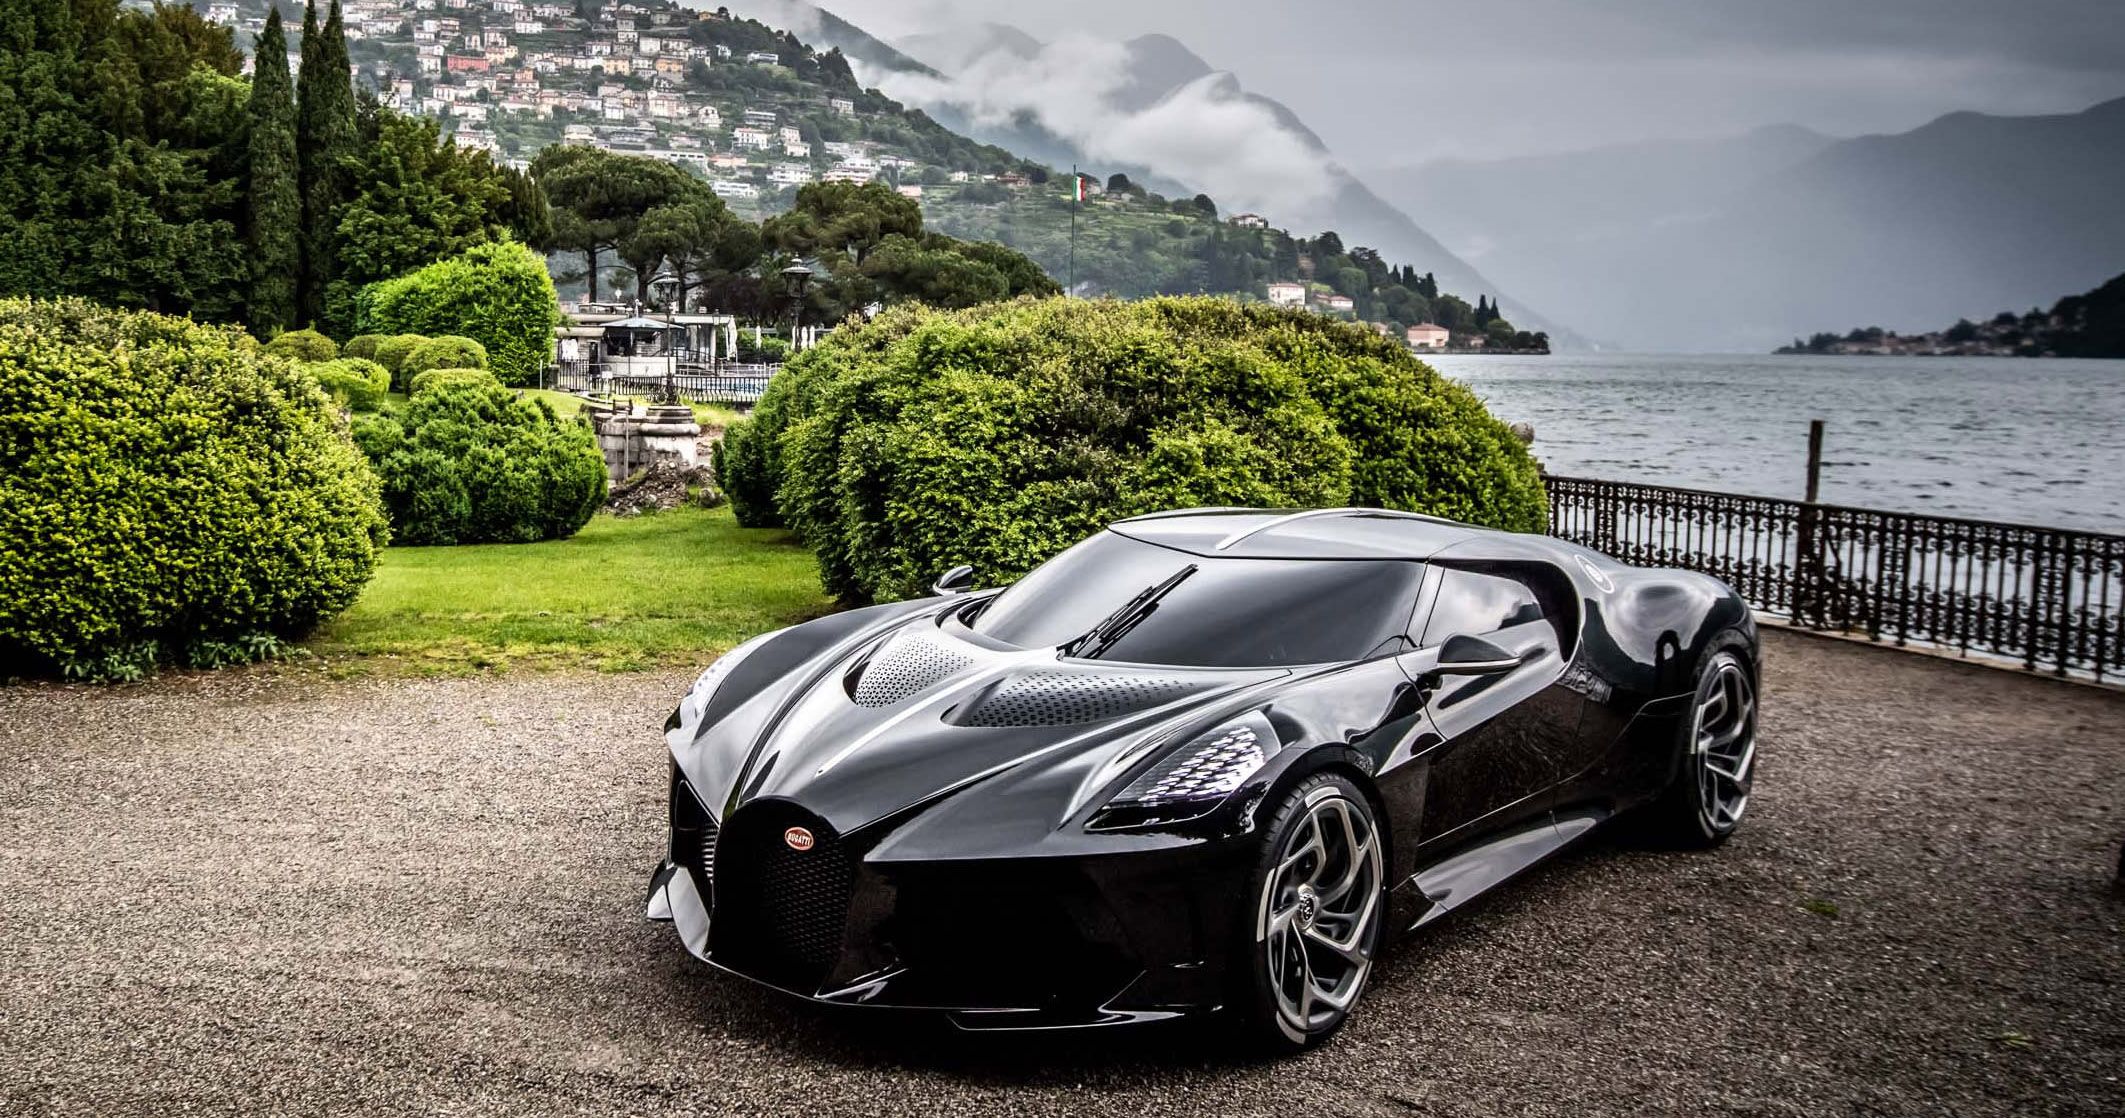 Bugatti La Voiture Noir front side view